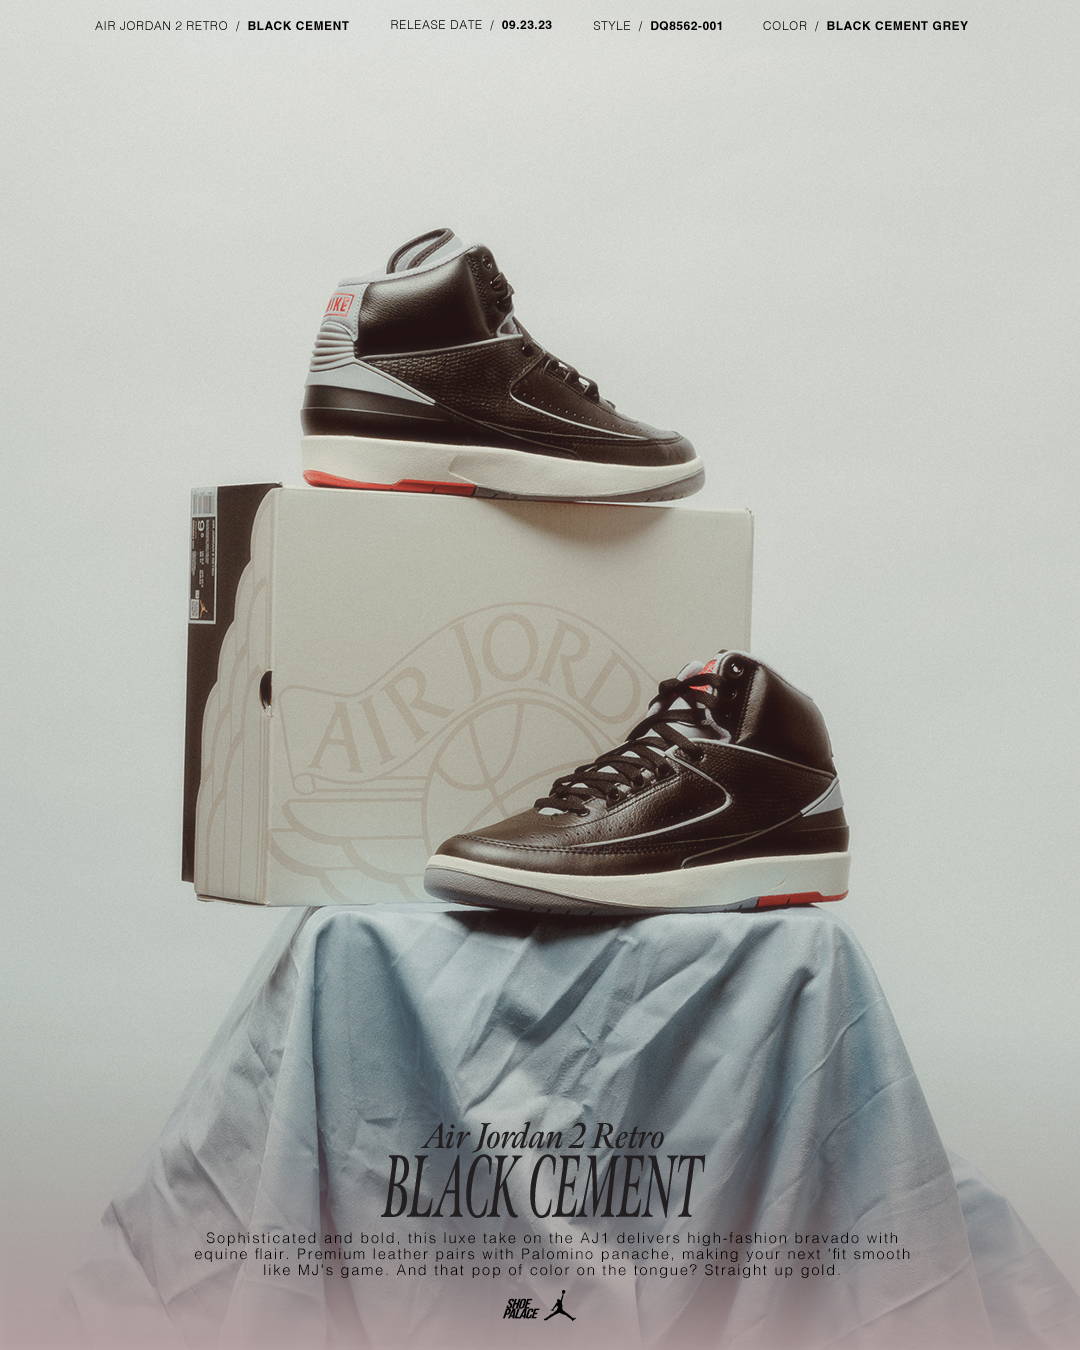  Air Jordan 2 black cement 